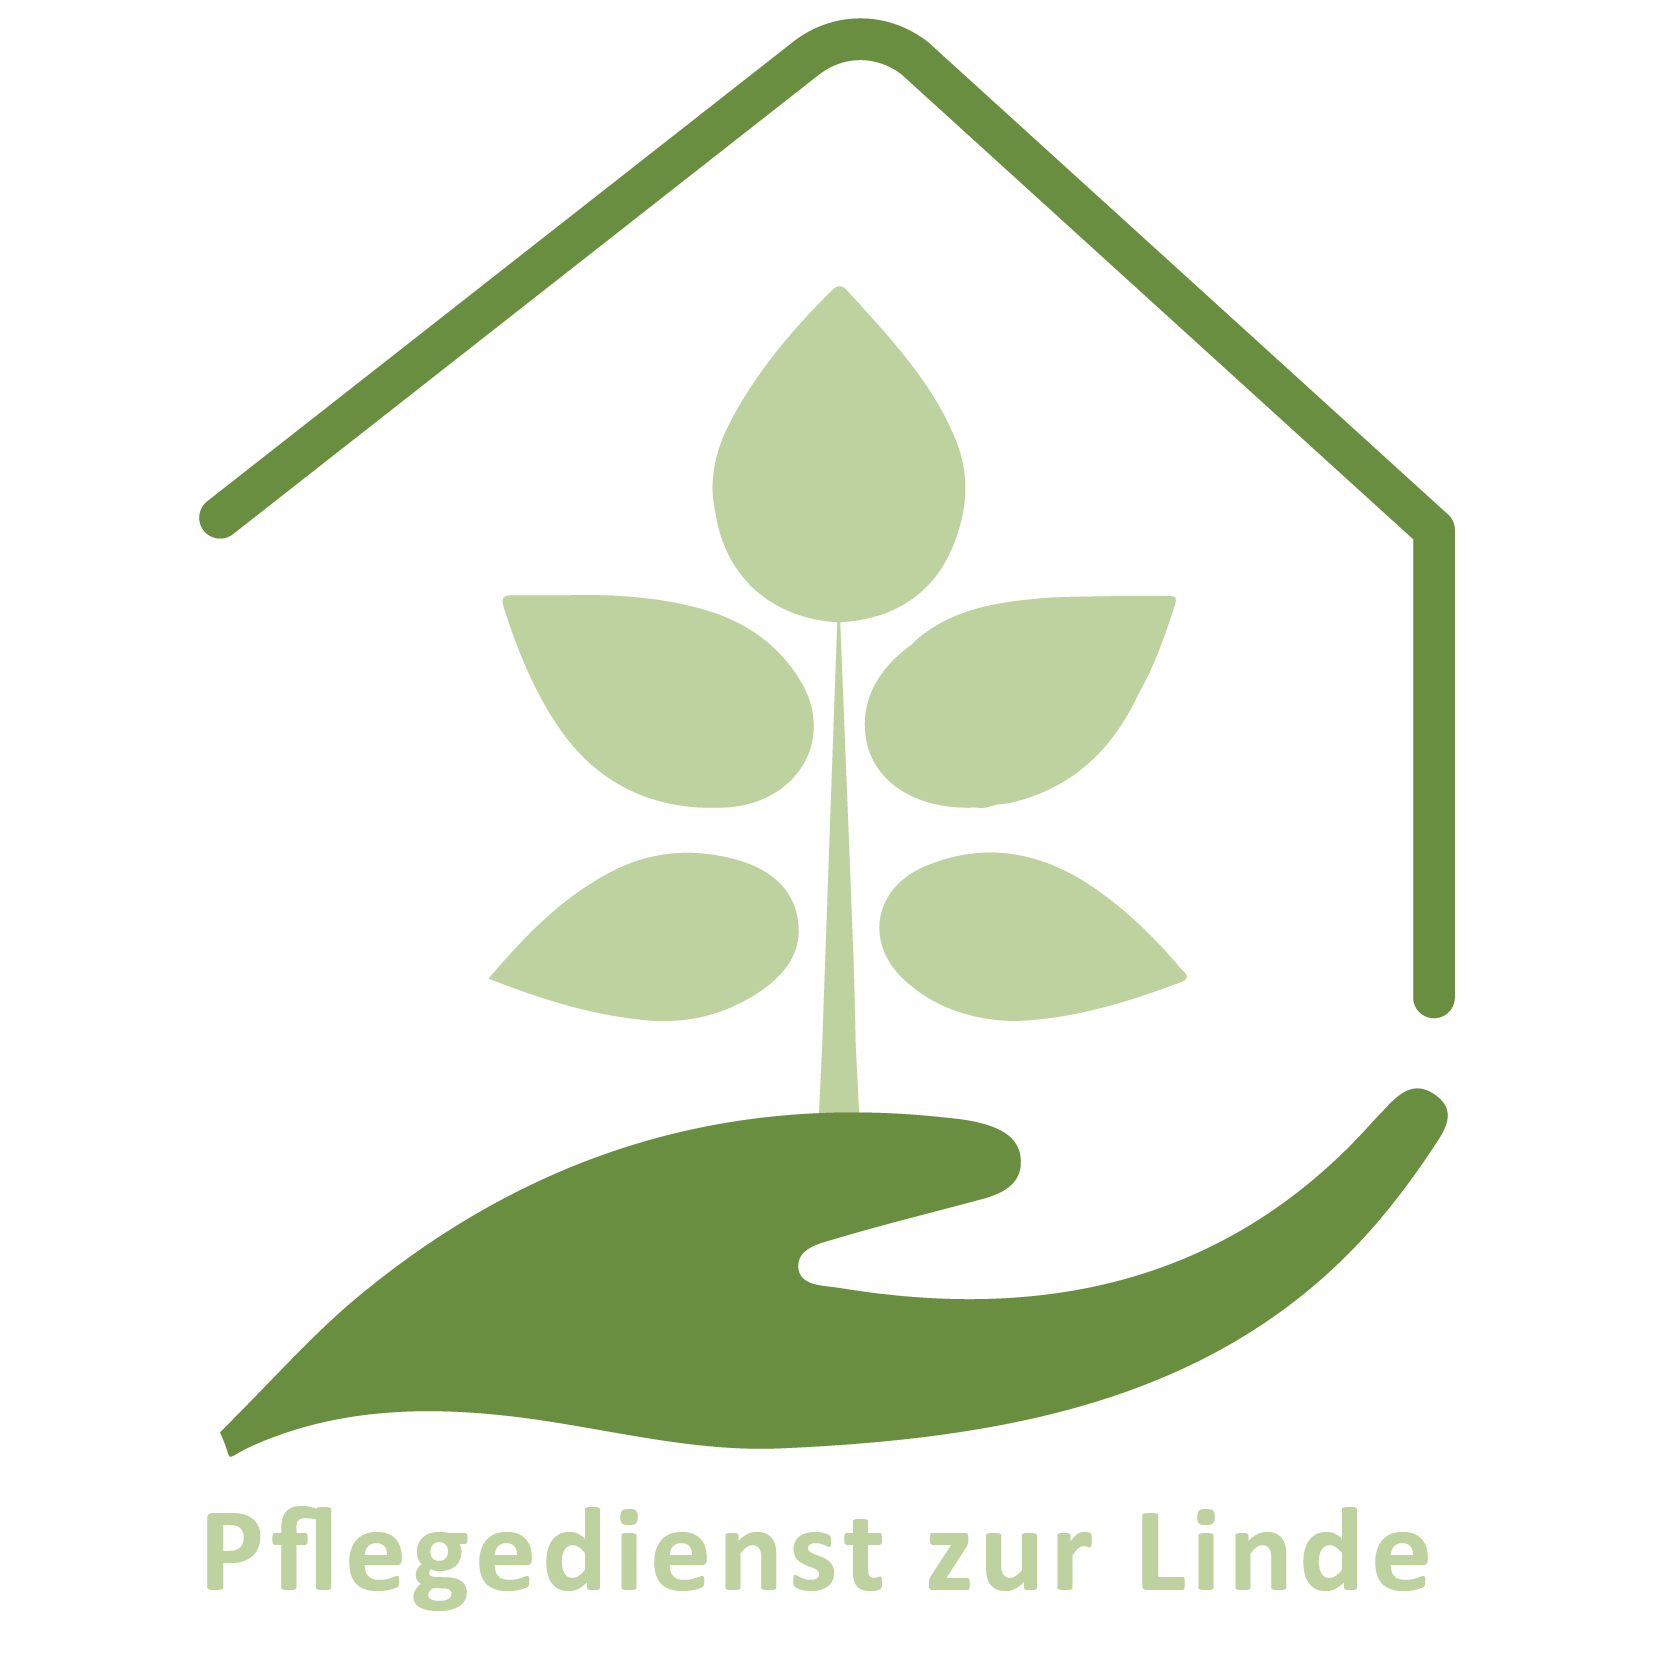 Pflegedienst_zur_linde_Logo